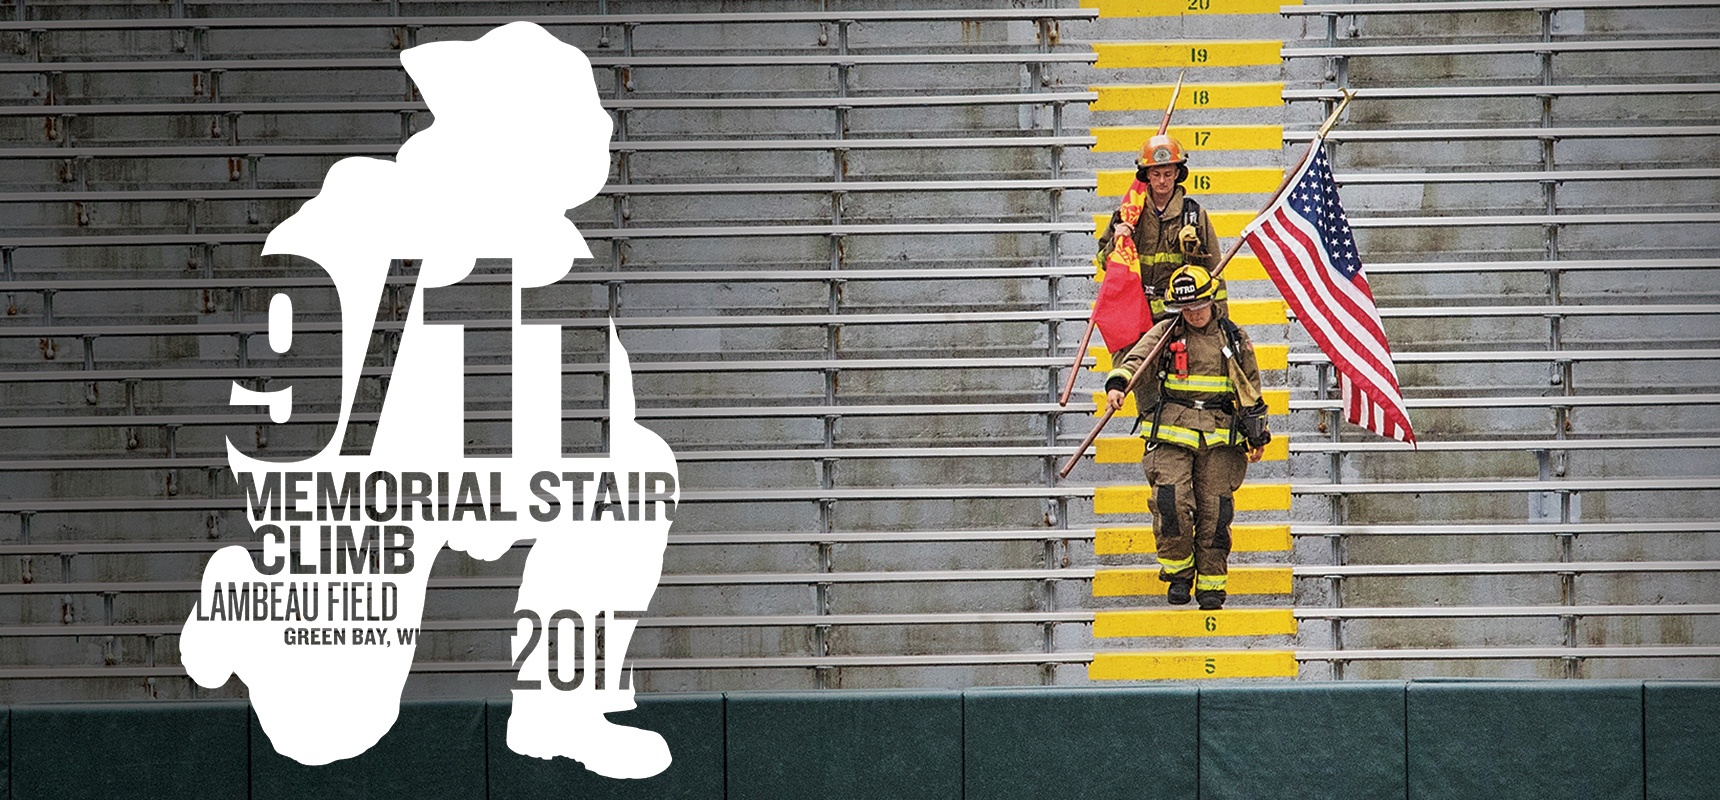 Date-Announced-for-Fifth-Annual-9-11-Memorial-Stair-Climb-at-Lambeau-Field_Header.jpg